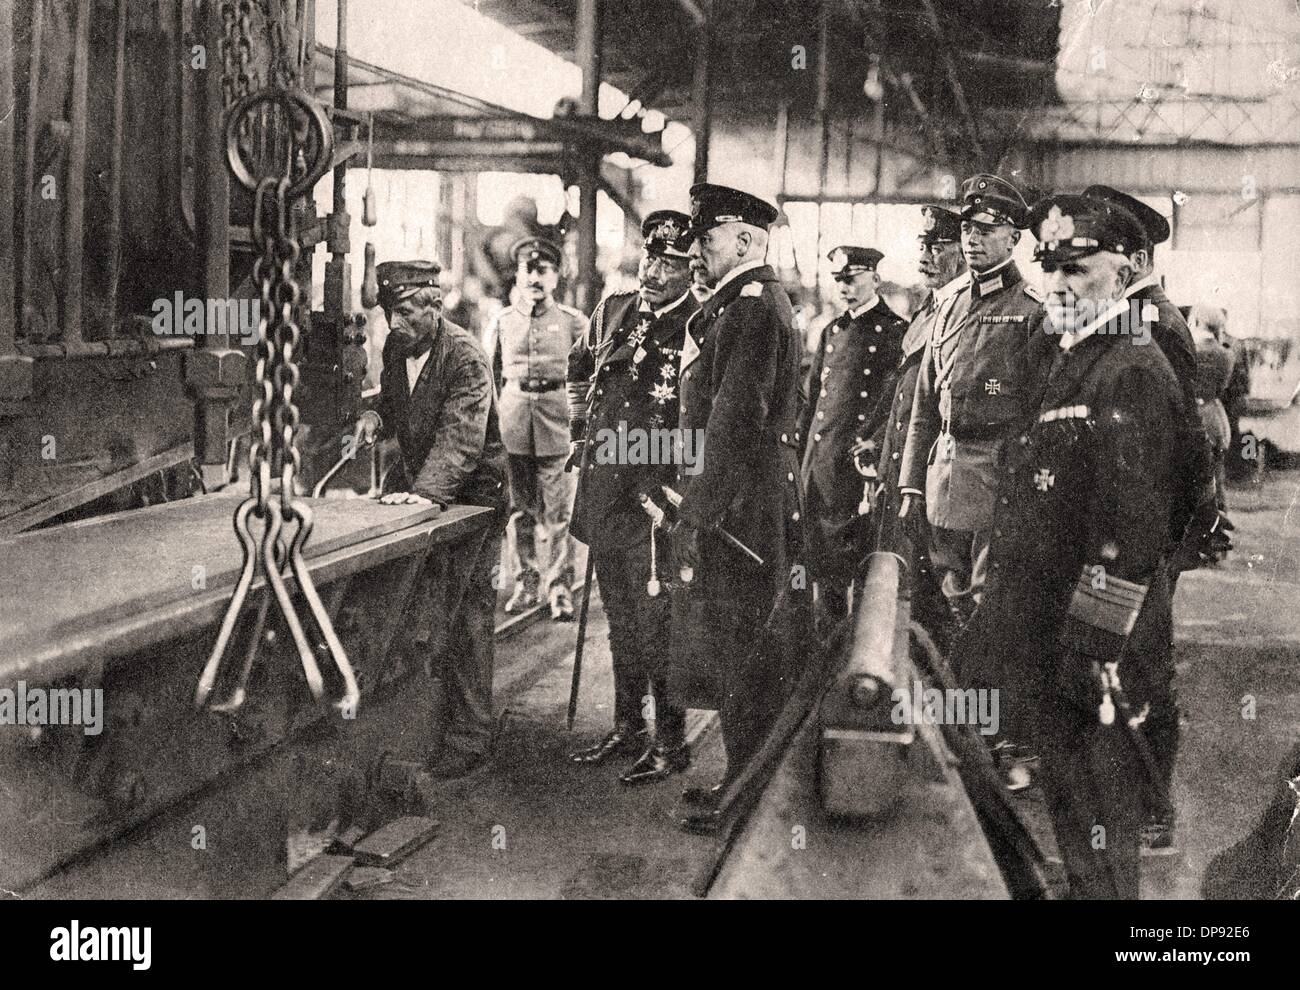 El emperador alemán Guillermo II (C) visita una fábrica alemana de armas y municiones y observa a un trabajador cortar placas de blindaje, lugar y fecha desconocidos. Archivo fotográfico für Zeitgeschichte Foto de stock